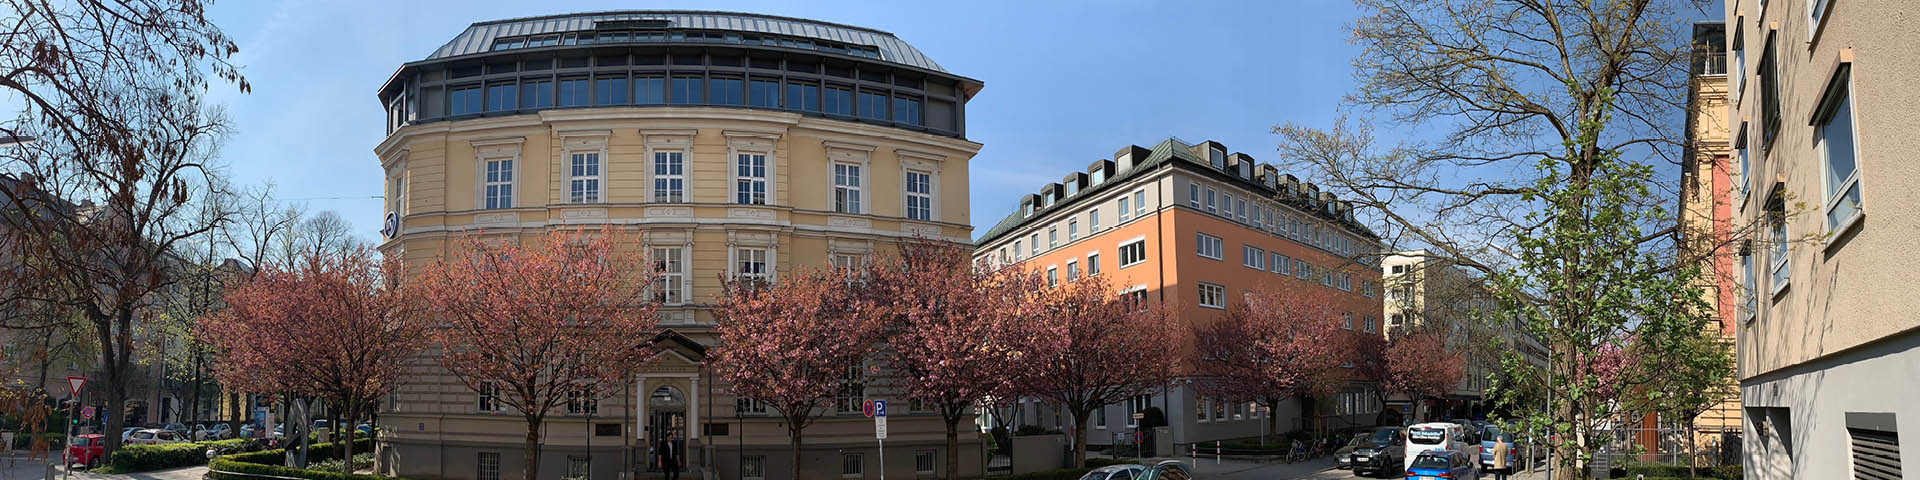 Direktionsgebäude des Münchener Verein